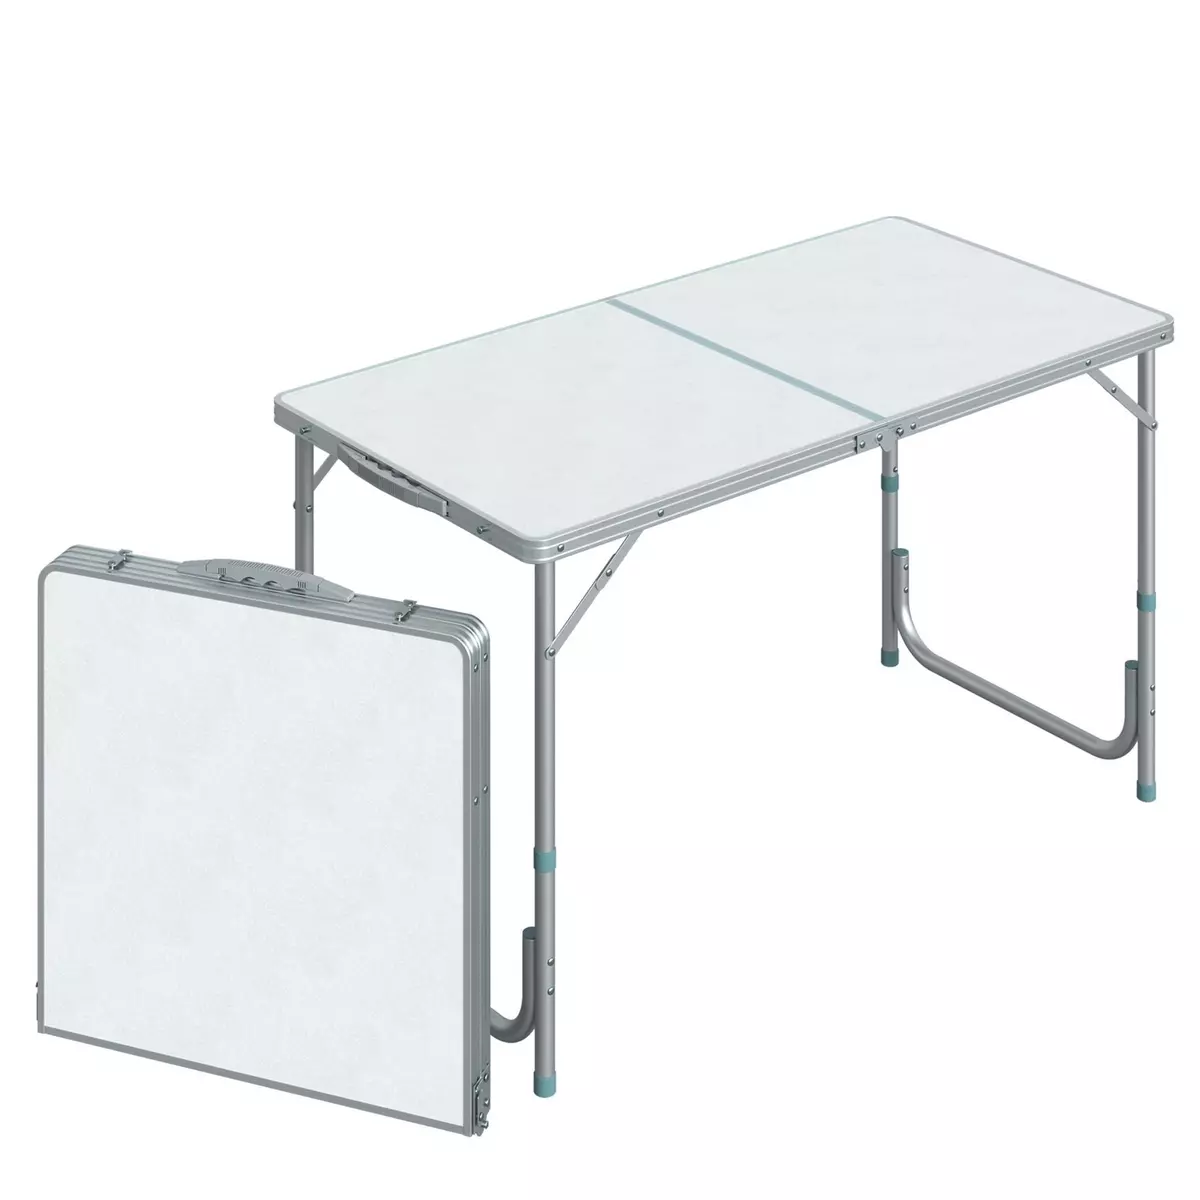 HOMCOM Table de camping reception pliante portable pique-nique buffet en aluminium